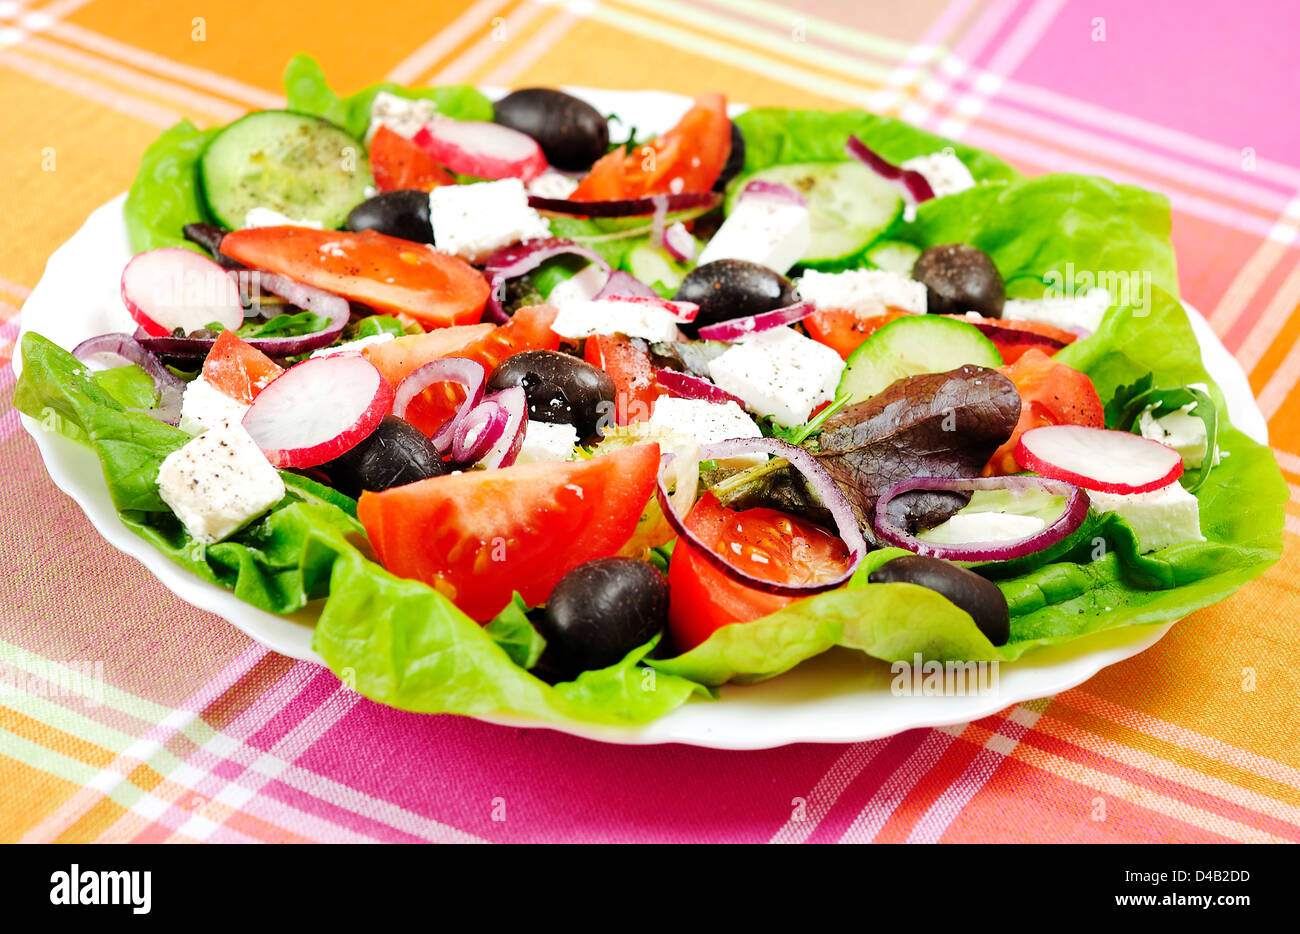 Fresh salad on kitchen table Stock Photo